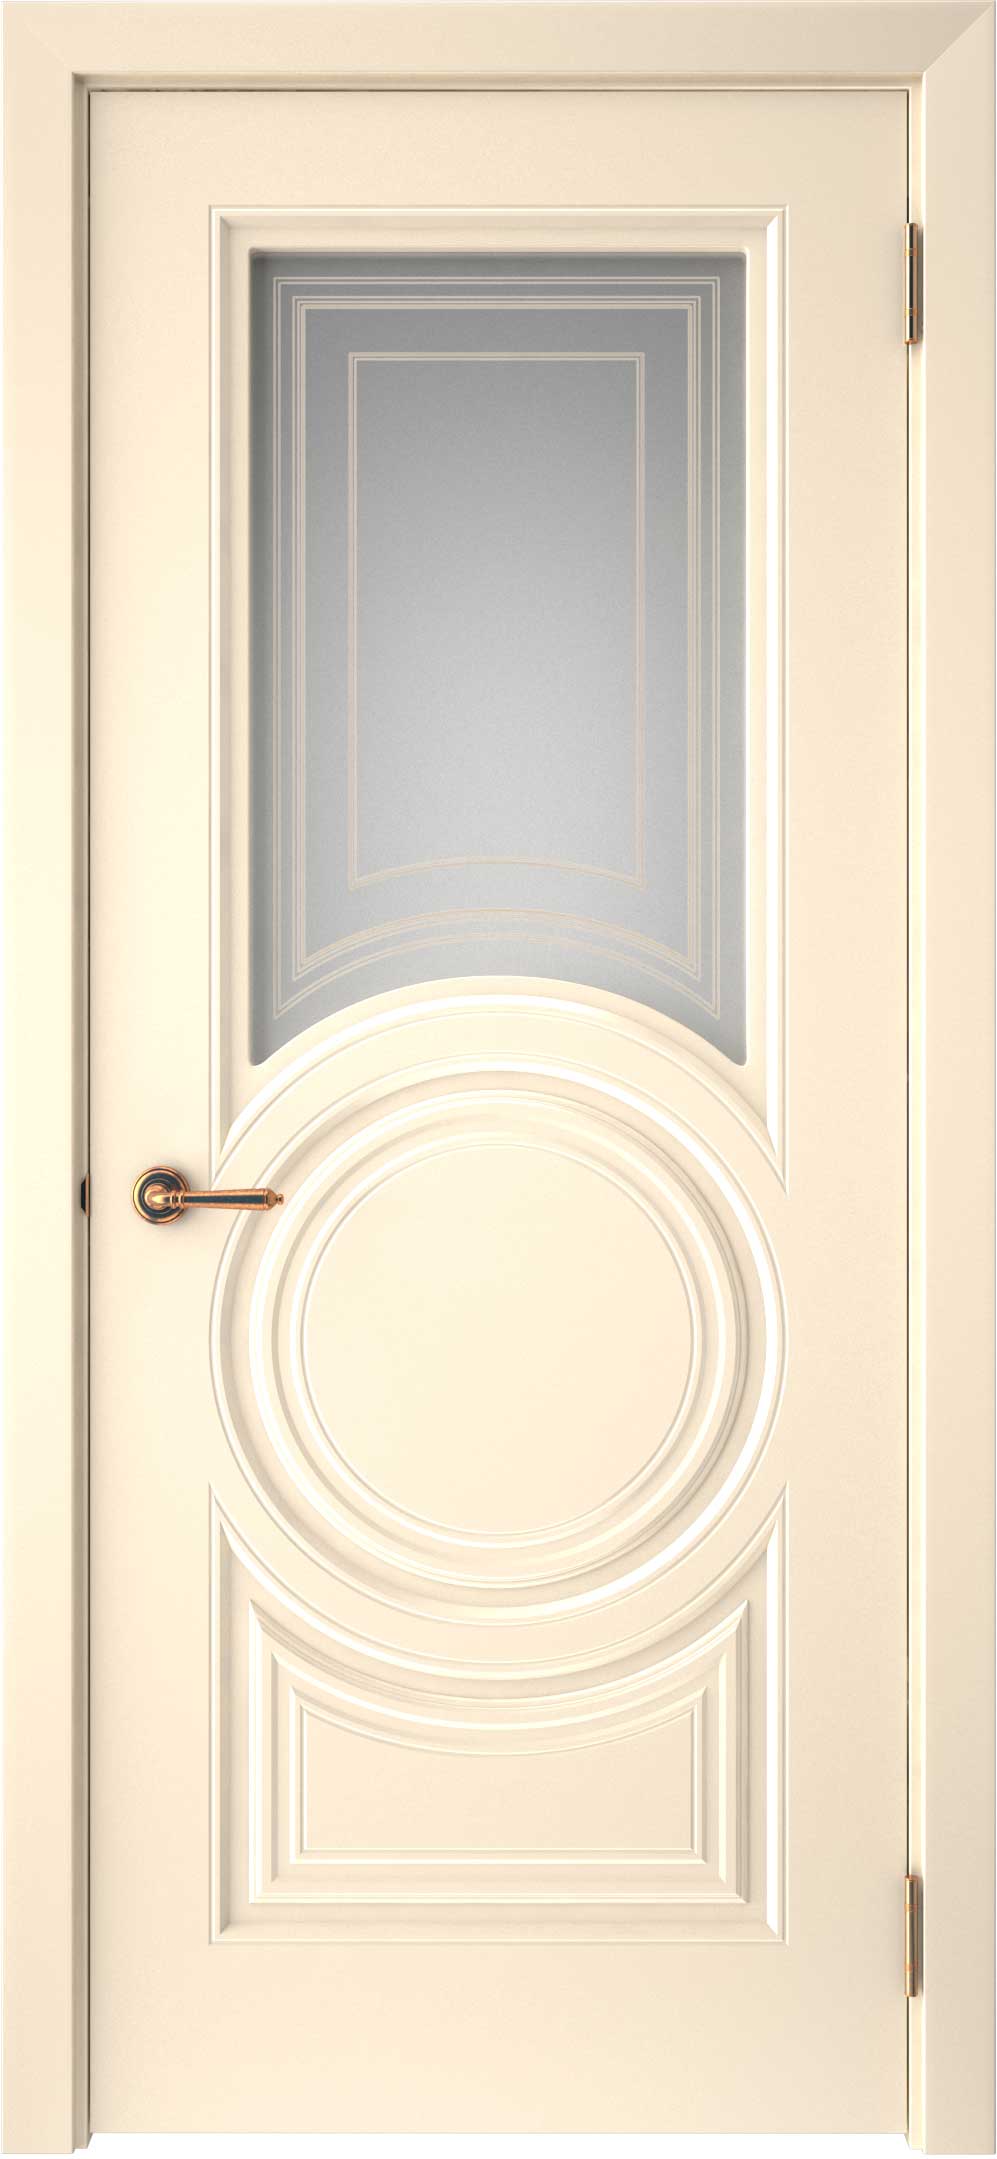 Двери крашеные (Эмаль) ТЕКОНА Смальта-45 со стеклом Ваниль ral размер 200 х 90 см. артикул F0000093323